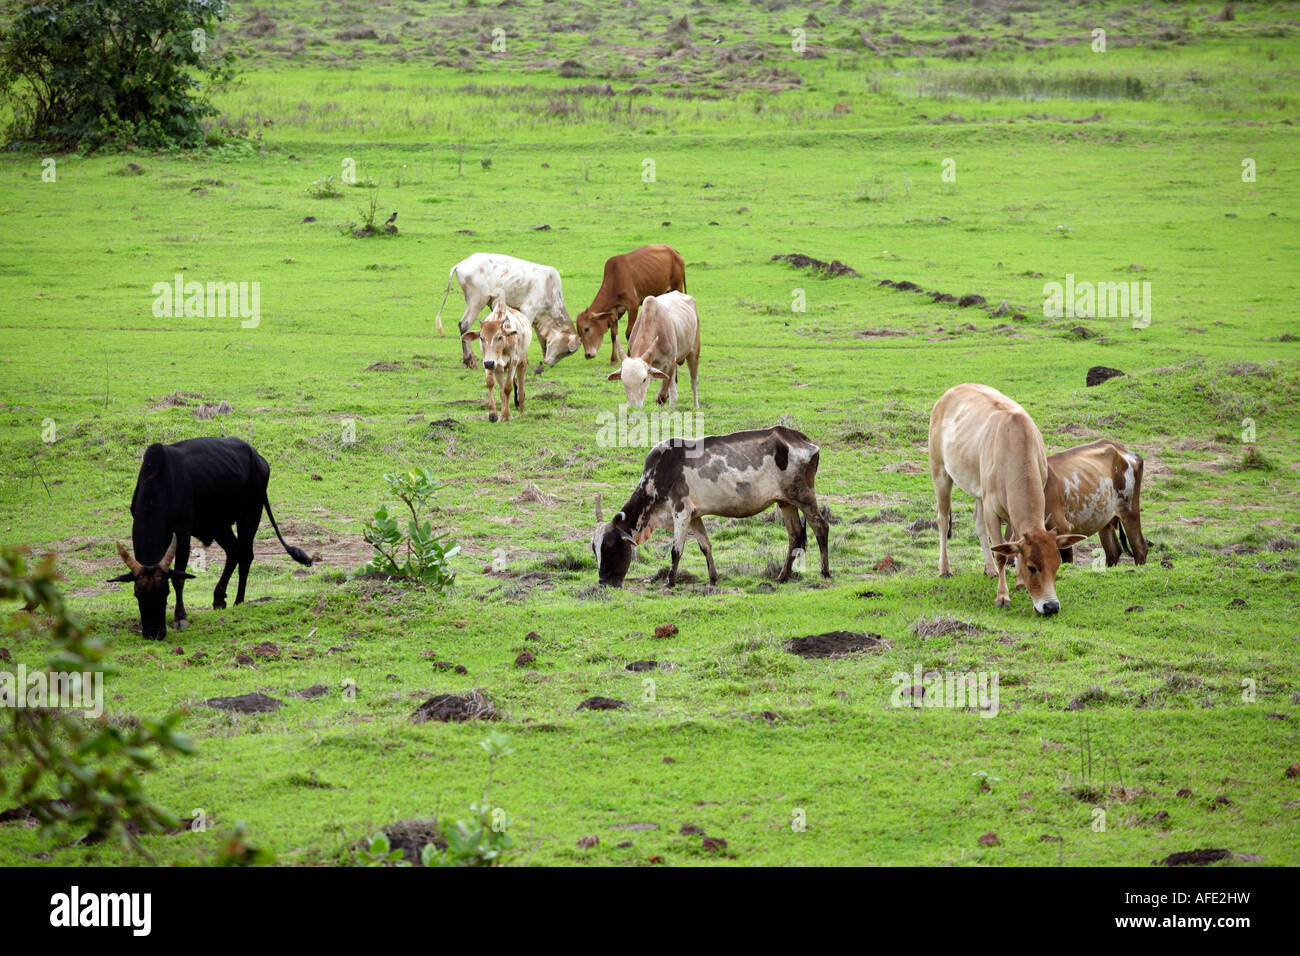 Einheimische Rinder Rassen/Mischlinge des indischen Subkontinents auf der saftigen Weide Tiracol Pernem Bezirk Nord Goa Indien Asien Stockfoto